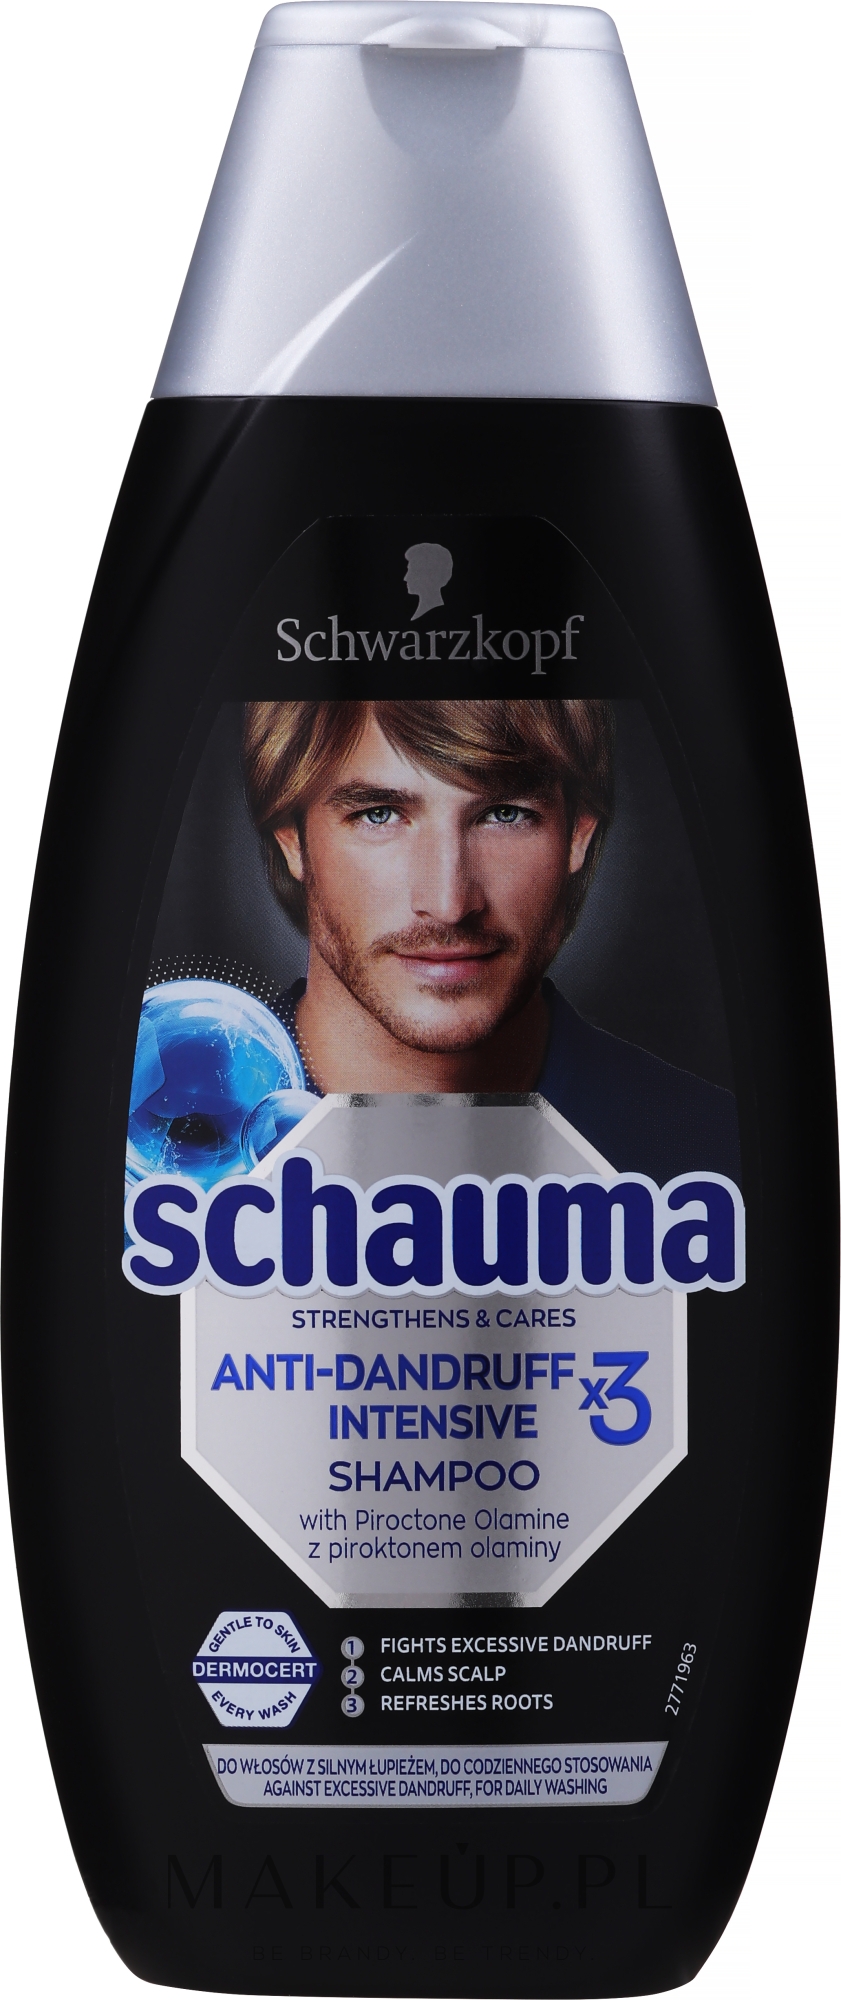 schwarzkopf schauma szampon do włosów przeciwłupieżowy dla mężczyzn